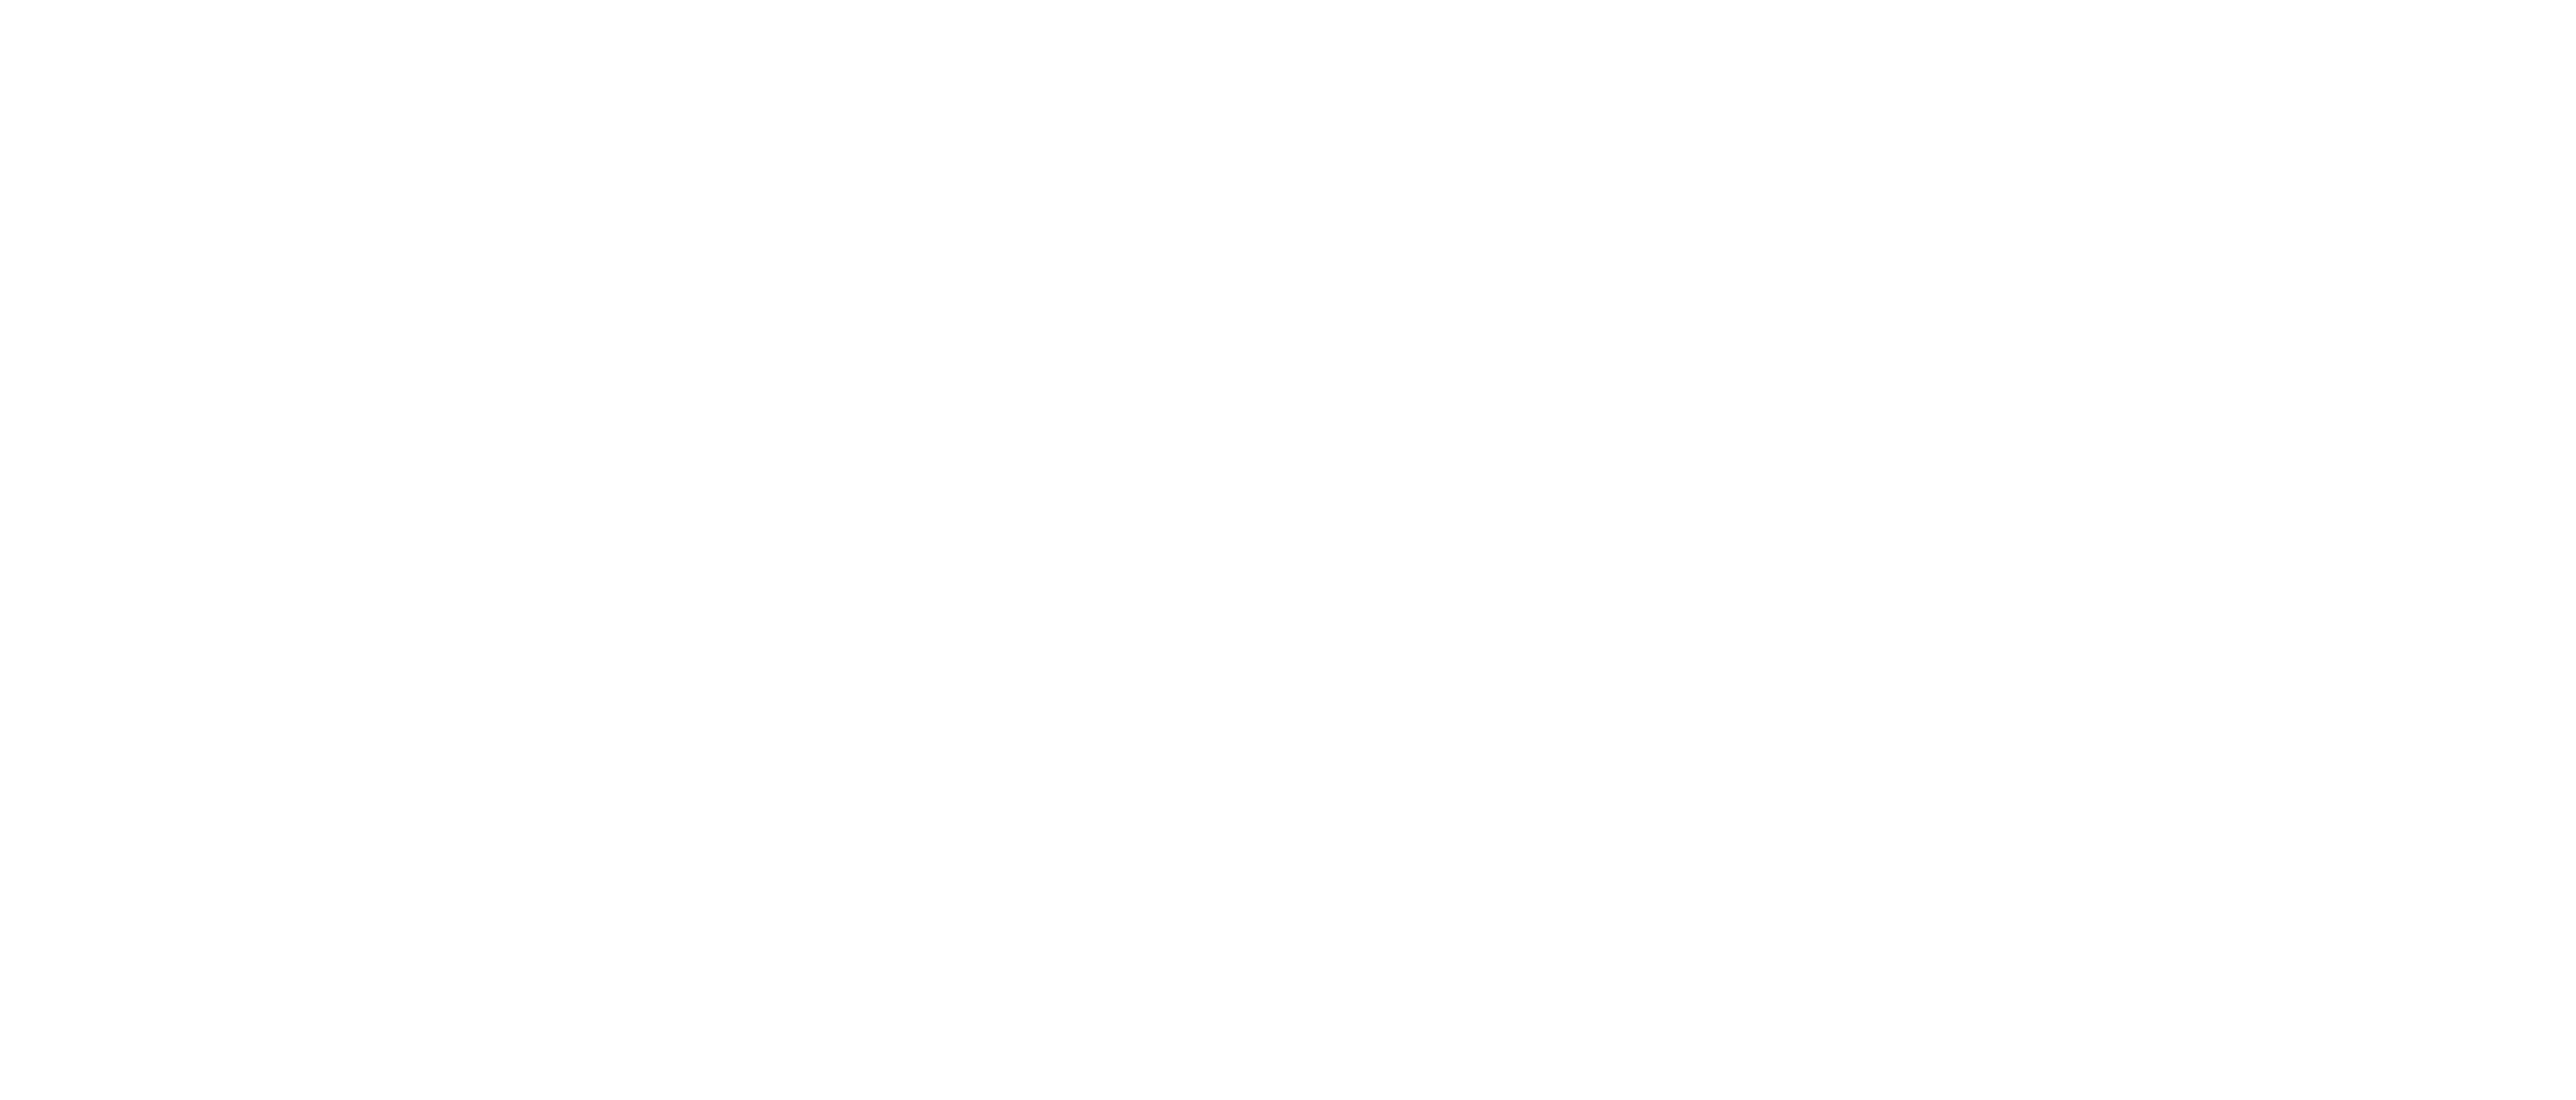 Burda logo in white